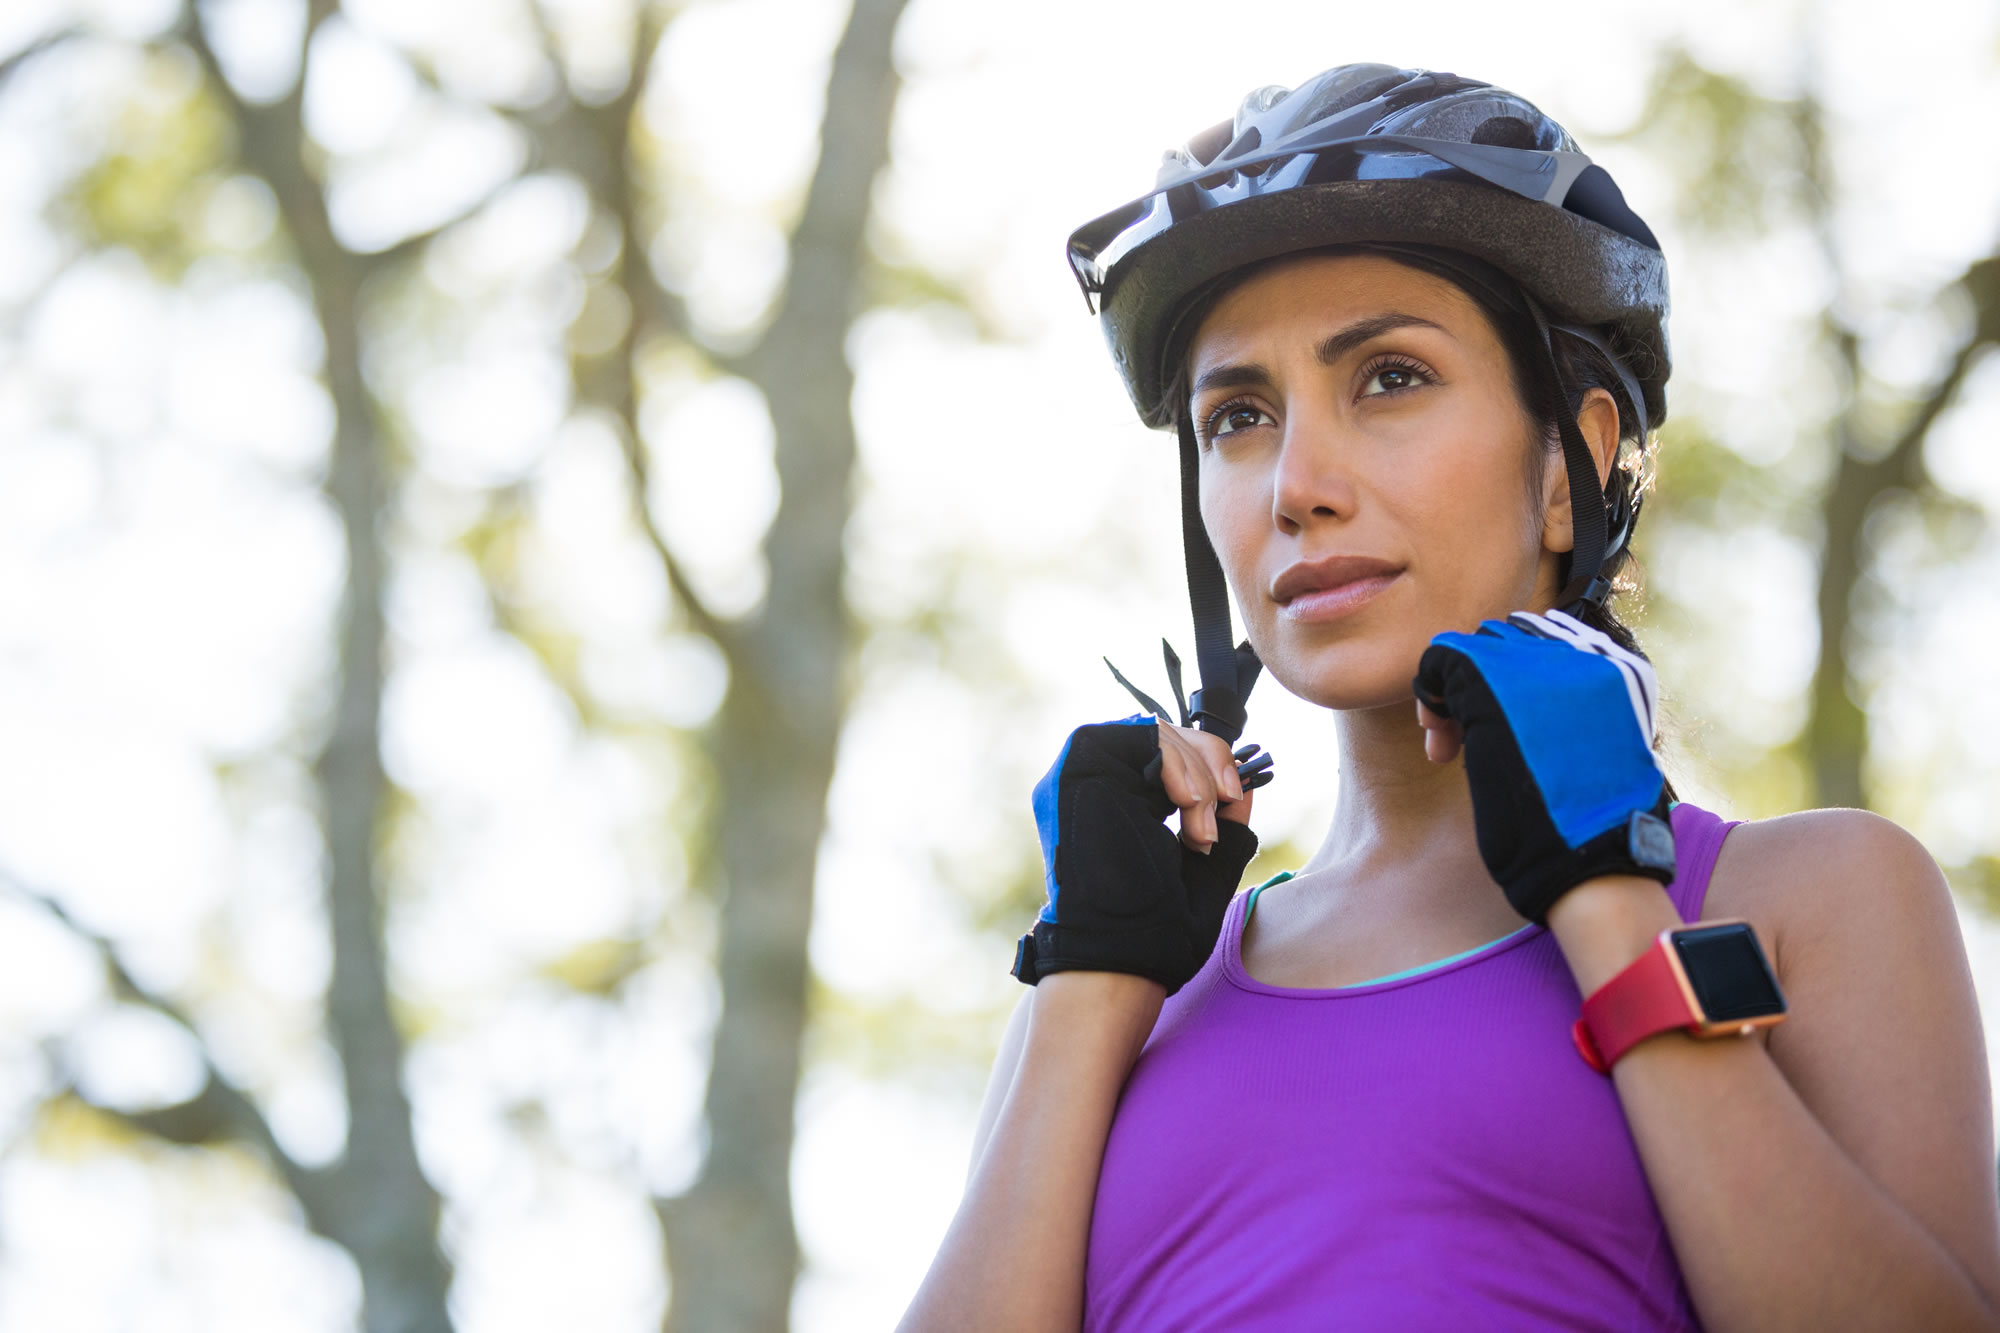 bike-helmets-dont-prevent-concussions